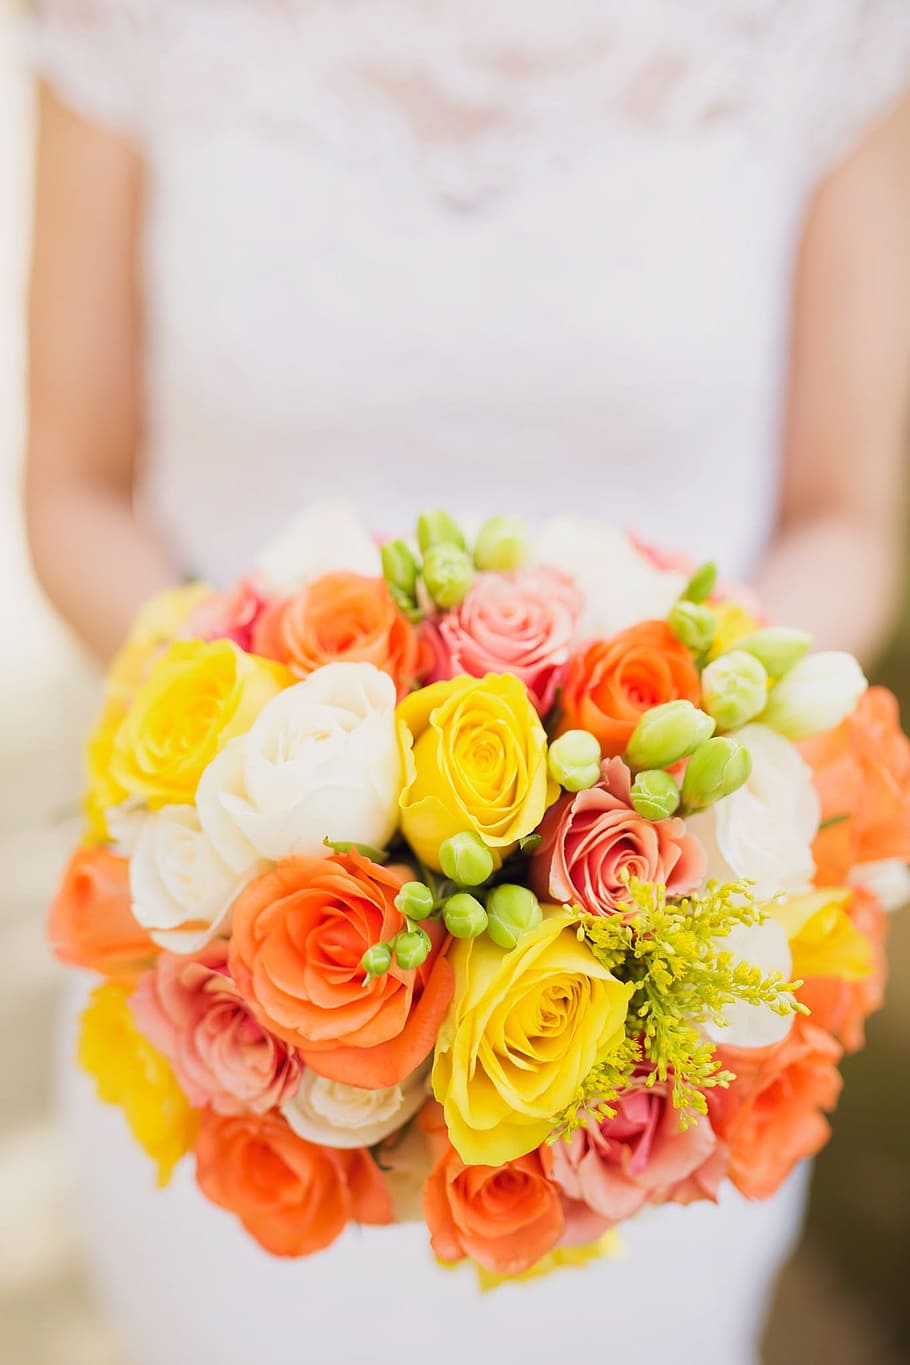 wanita, mengenakan, putih, gaun lengan topi, memegang, kuning-oranye dan putih, mawar, karangan bunga, bunga, dangkal